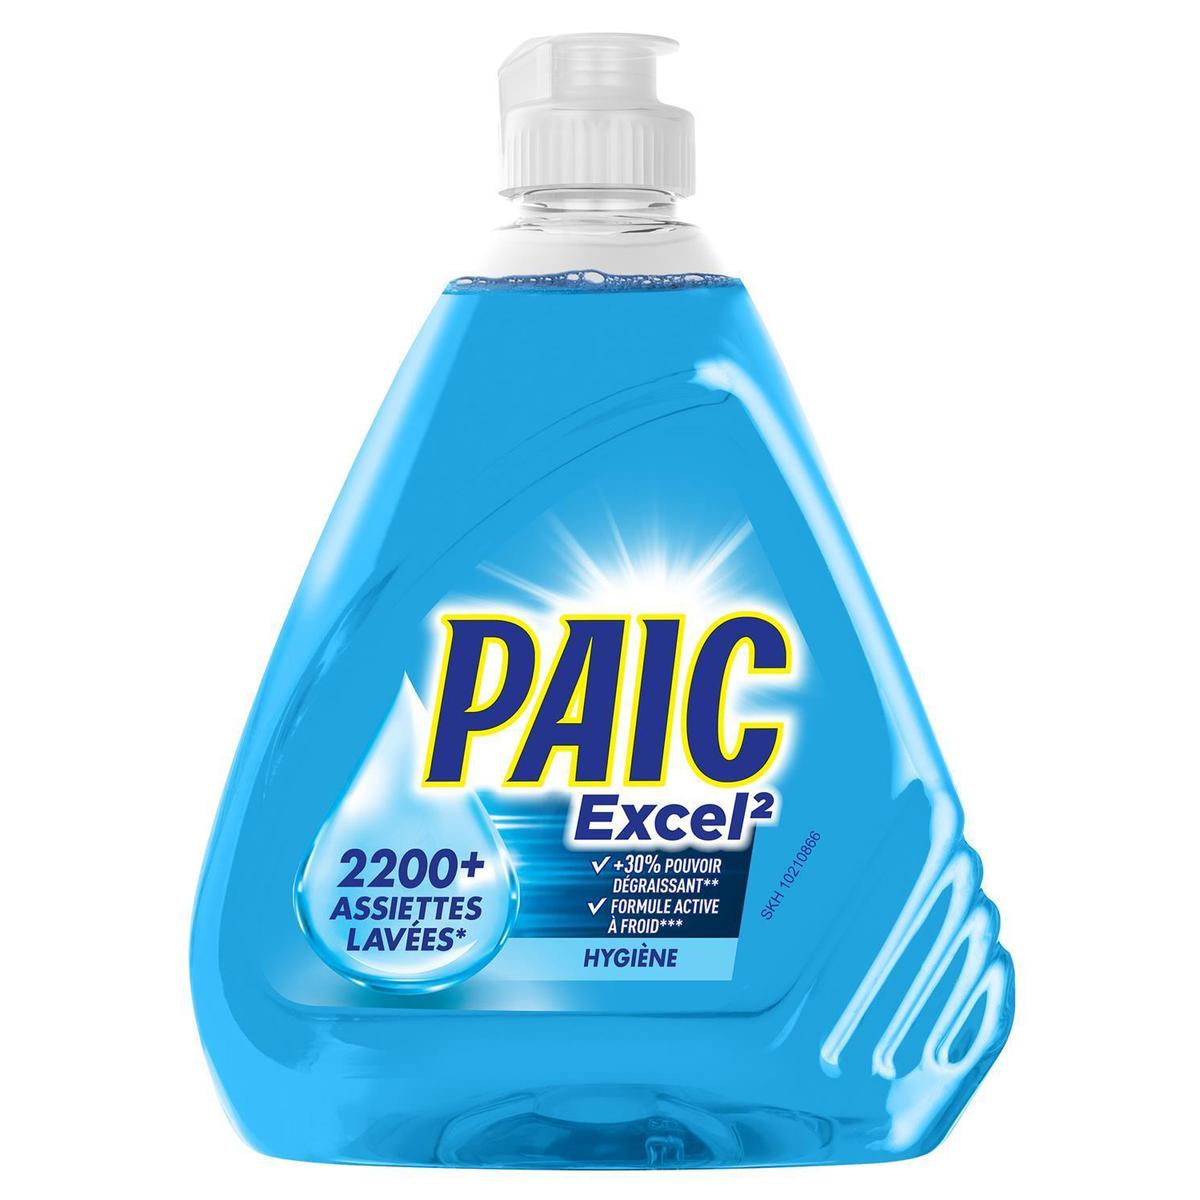 Achat / Vente Paic Liquide vaisselle actif à froid anti odeur, 500ml